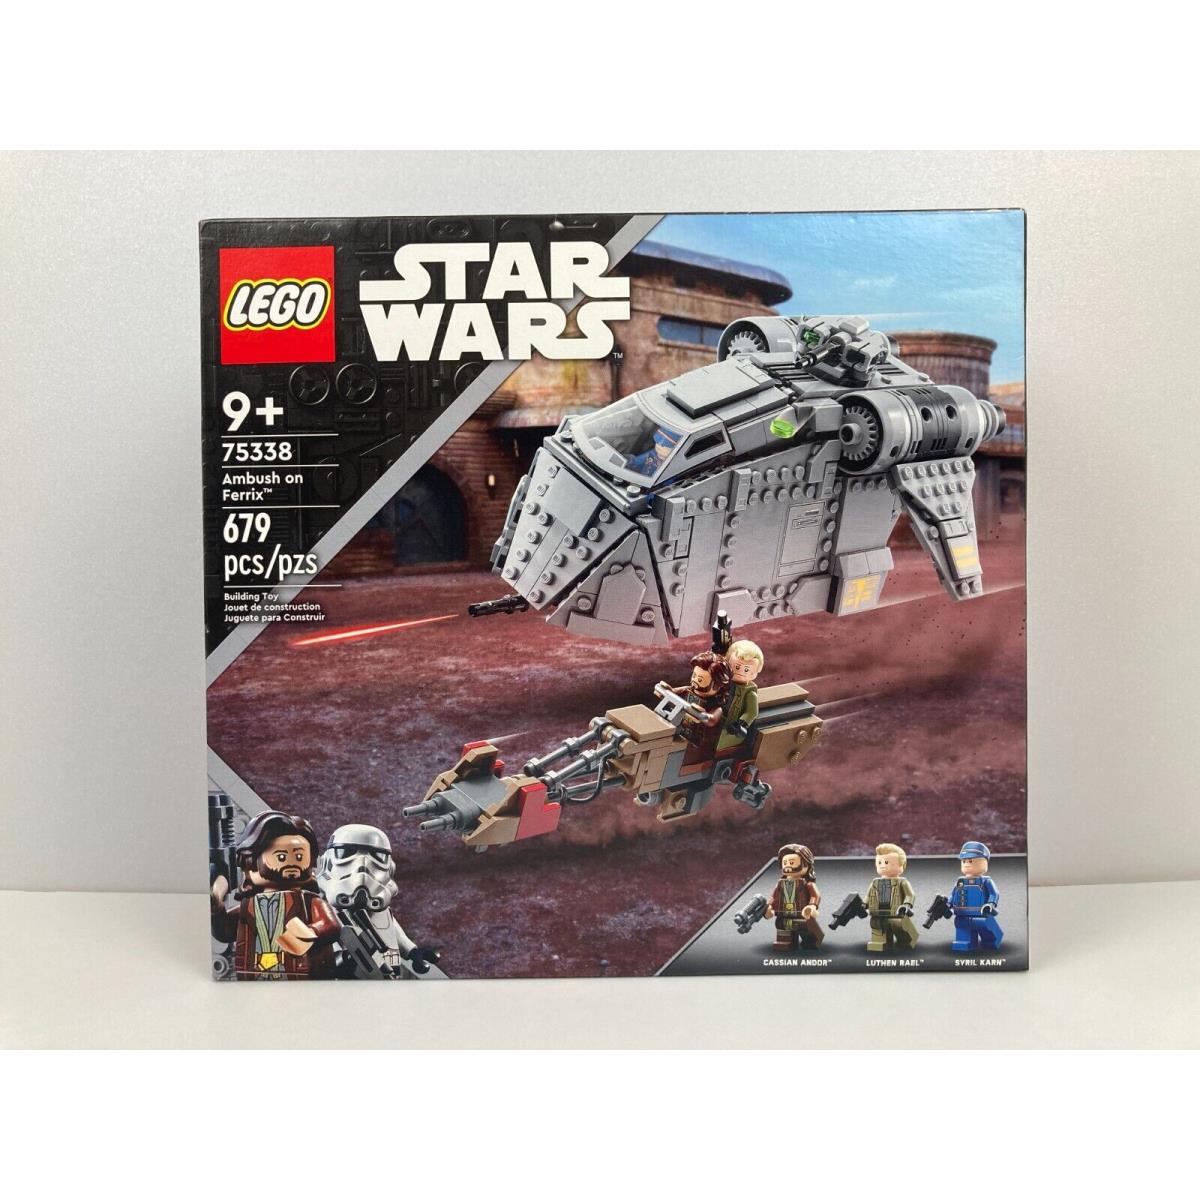 Lego Star Wars - Ambush on Ferrix Building Set Model 75338 679Pcs